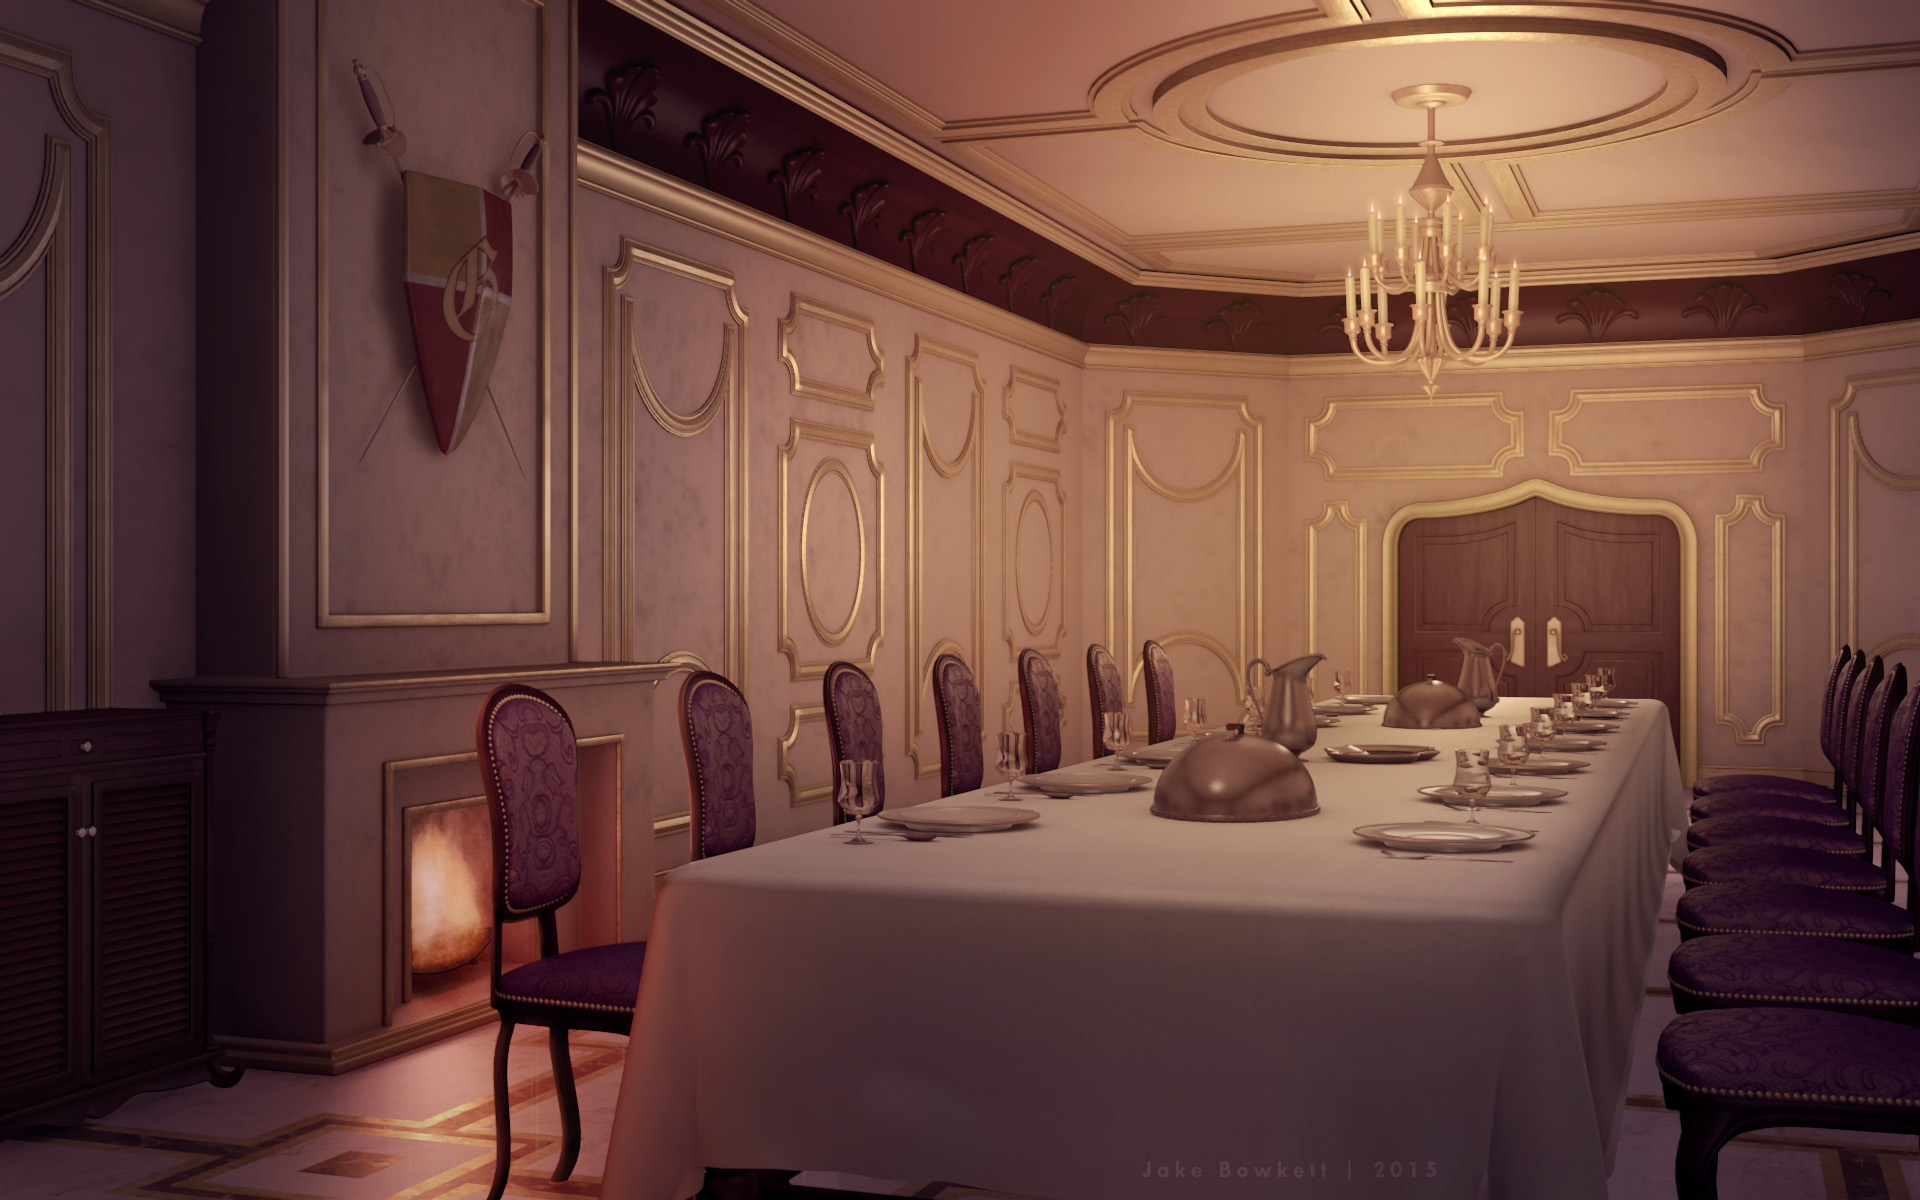 Dining Room by JakeBowkett on DeviantArt